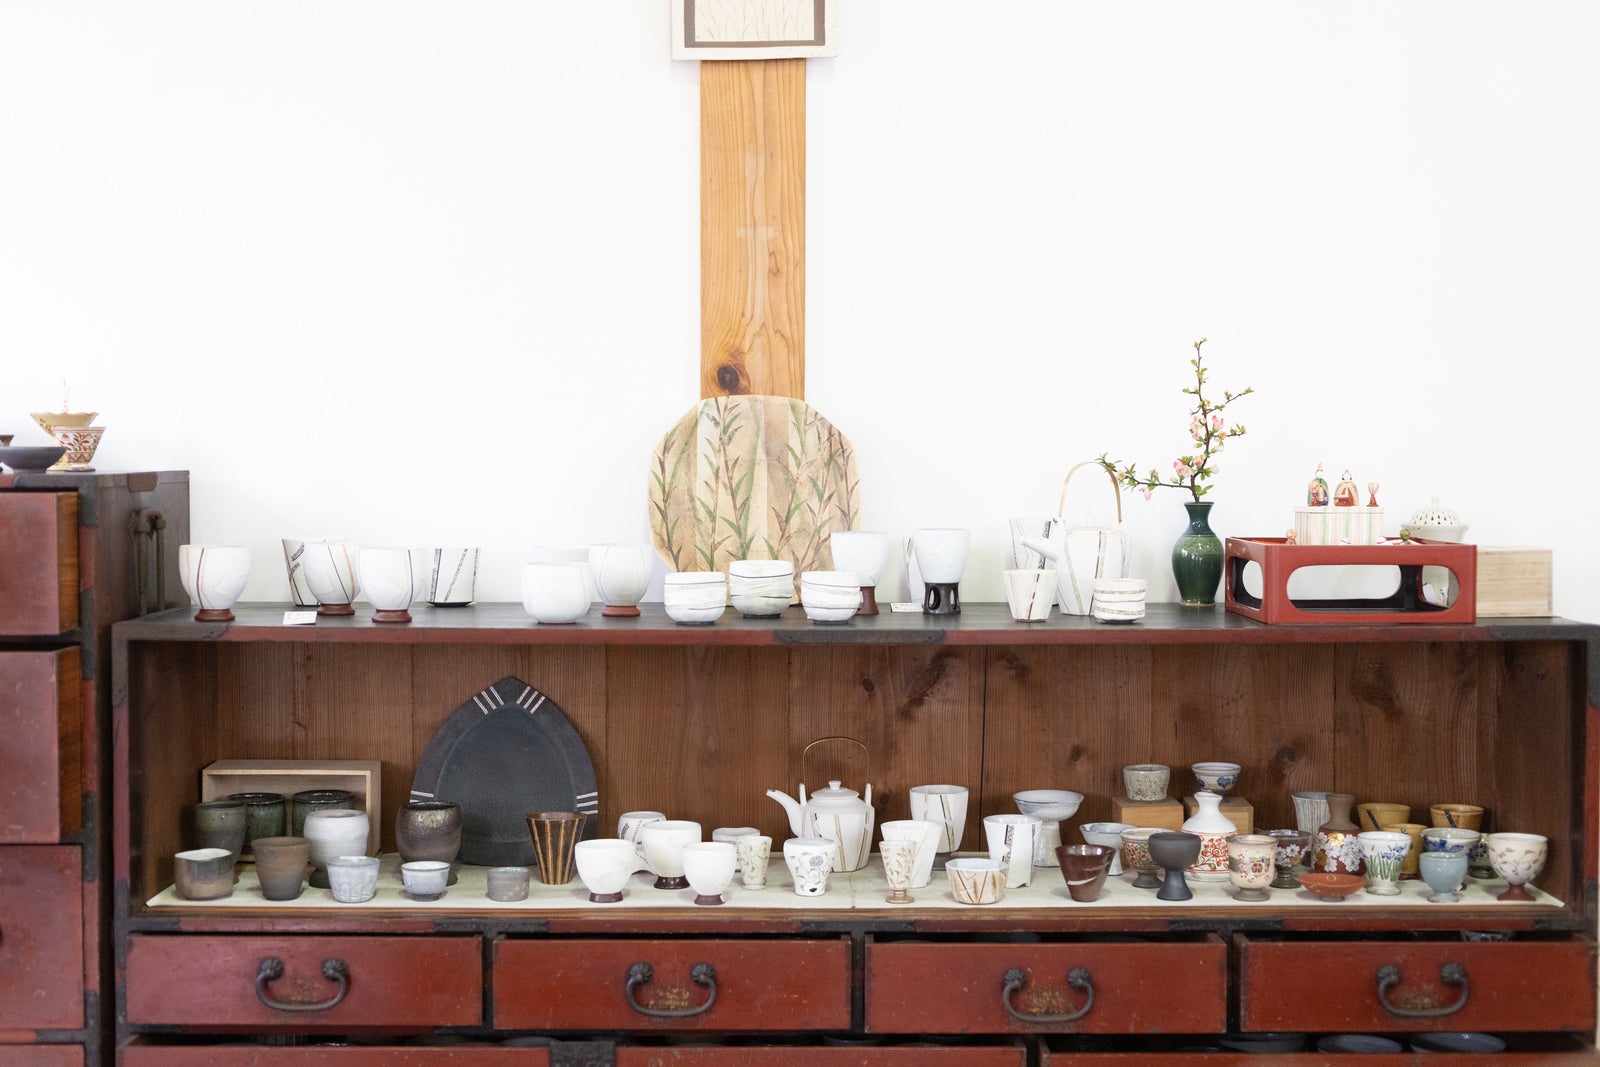 「宮原隆窯で販売中の陶器類」の写真